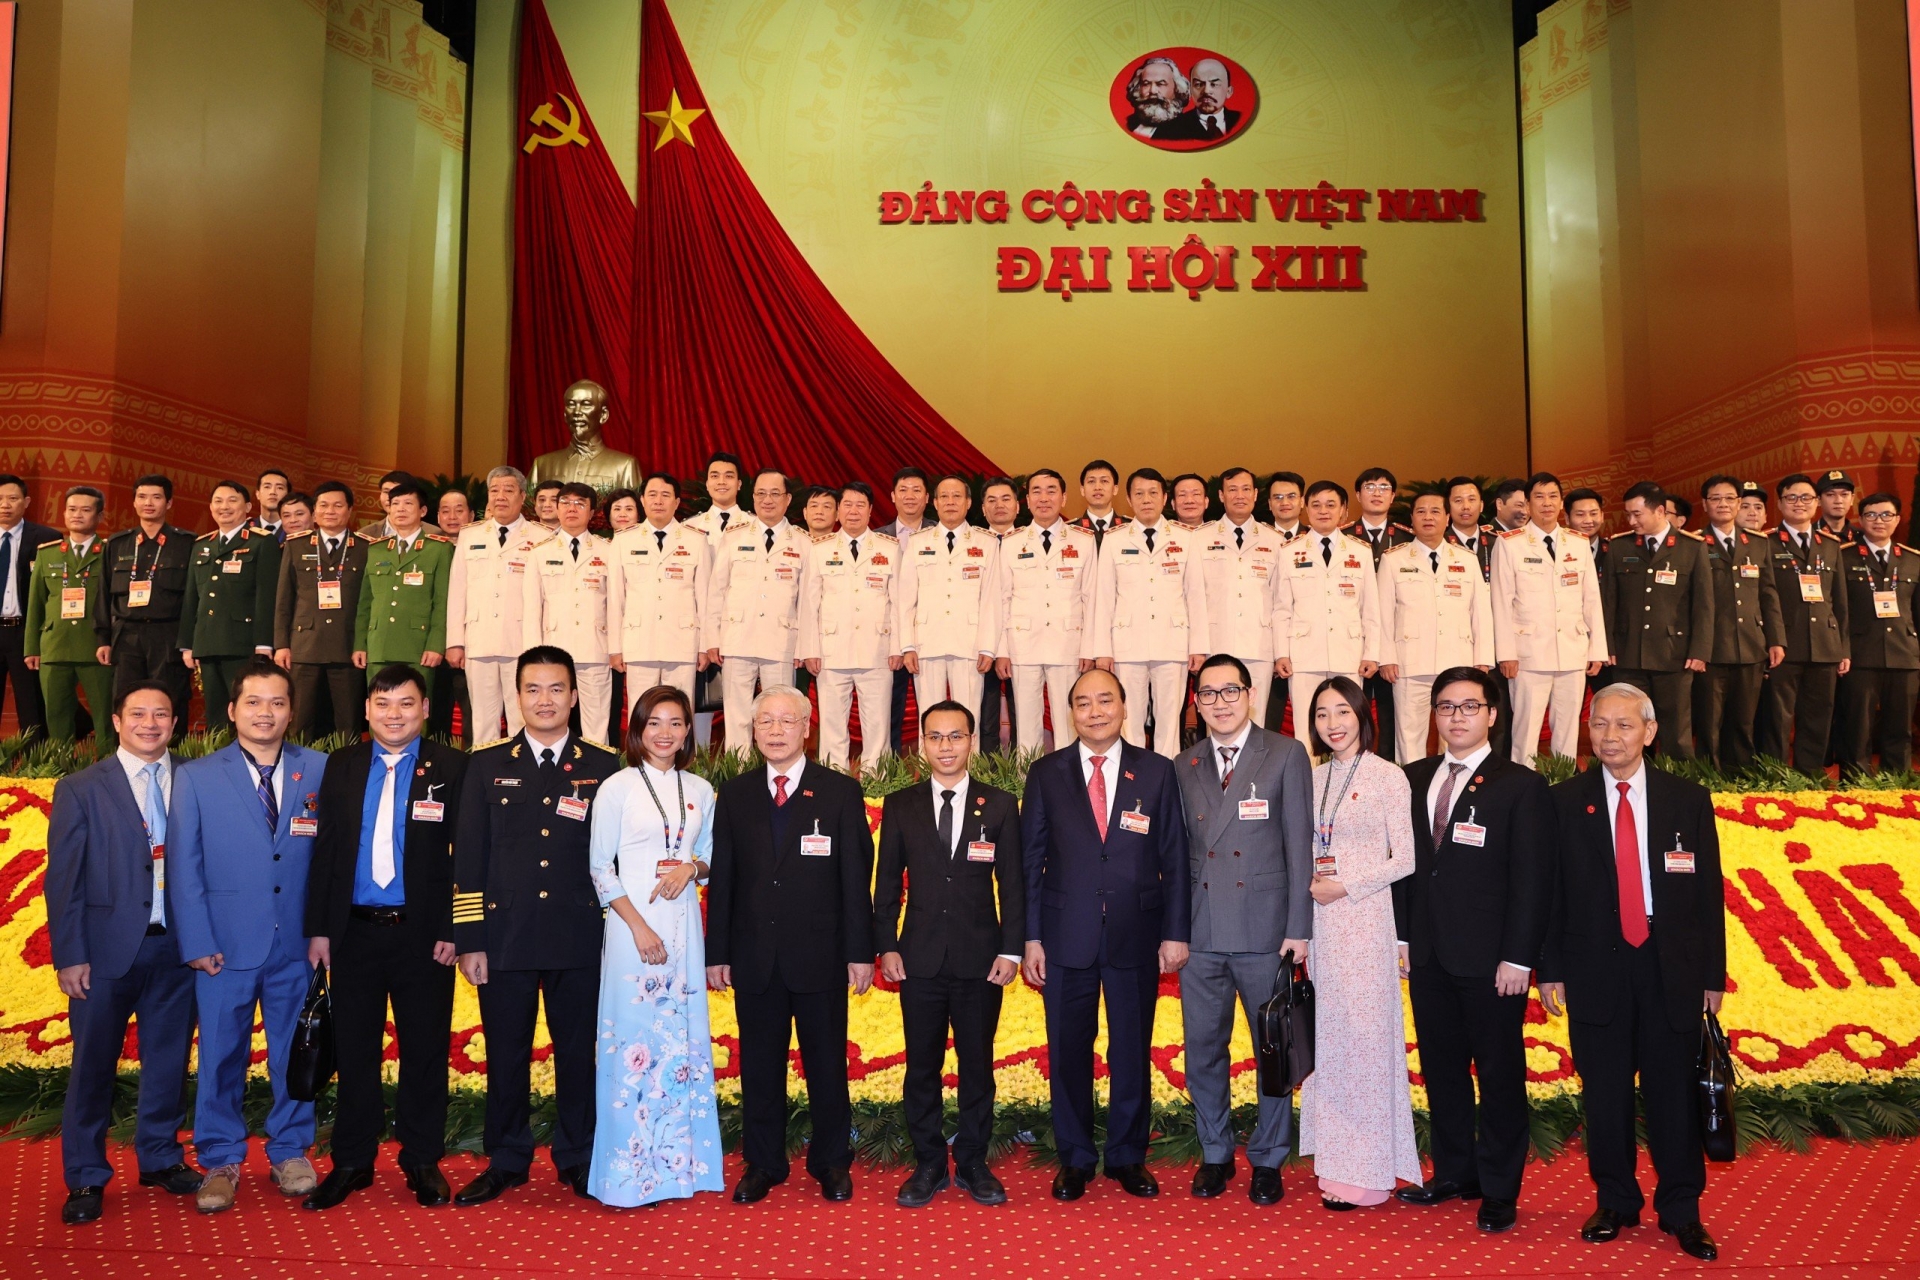 Anh Lưu Lập Đức (hàng trước, thứ 3 từ trái qua) cùng đoàn đại biểu chụp hình lưu niệm cùng Tổng Bí thư Nguyễn Phú Trọng và các đồng chí lãnh đạo Đảng, Nhà nước